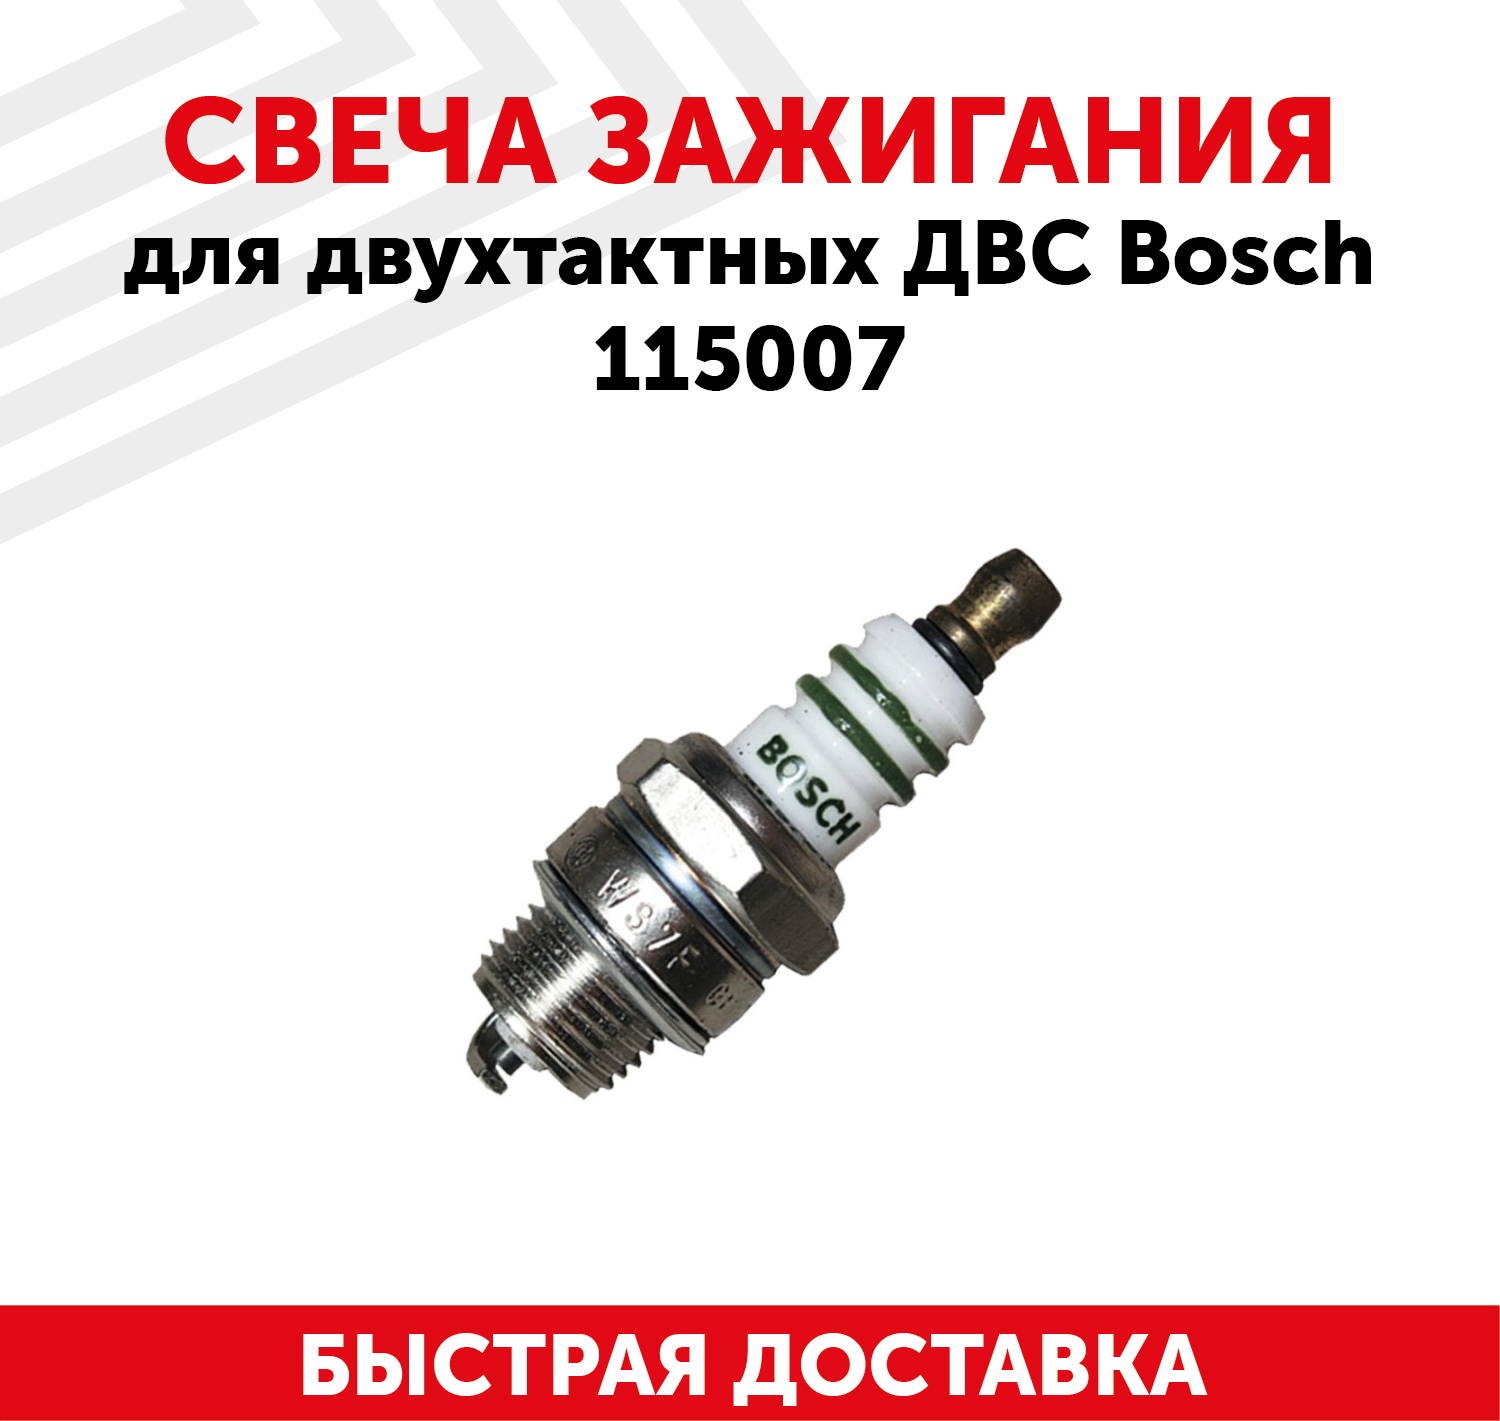 Свеча зажигания для двухтактных двигателей ДВС Bosch, 115007